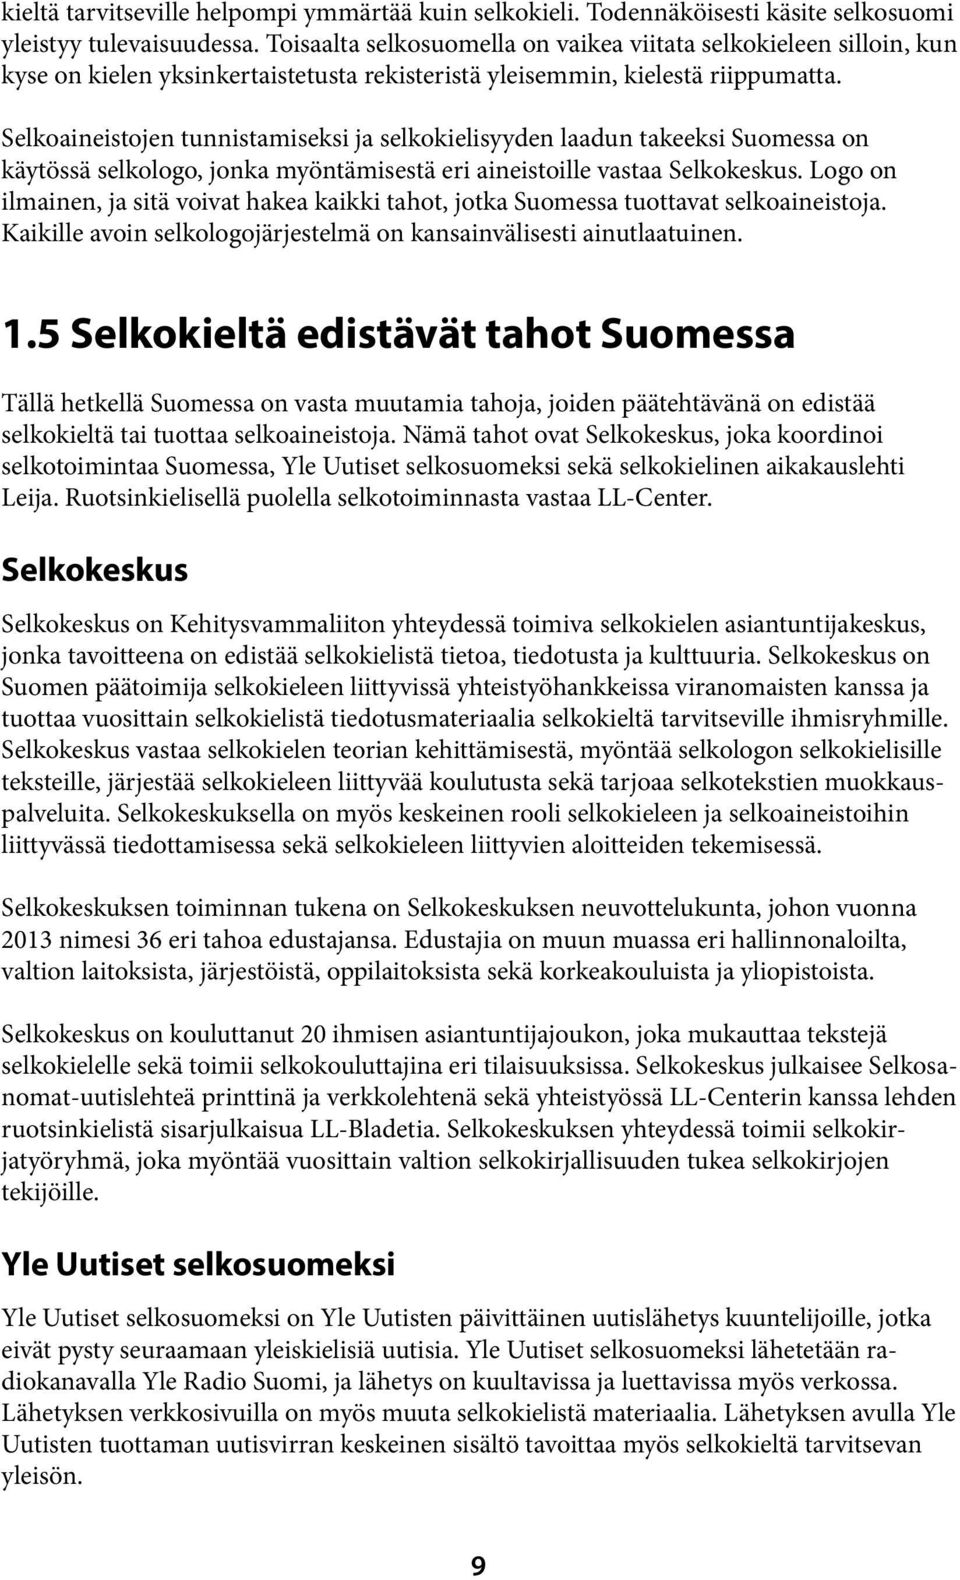 Selkoaineistojen tunnistamiseksi ja selkokielisyyden laadun takeeksi Suomessa on käytössä selkologo, jonka myöntämisestä eri aineistoille vastaa Selkokeskus.